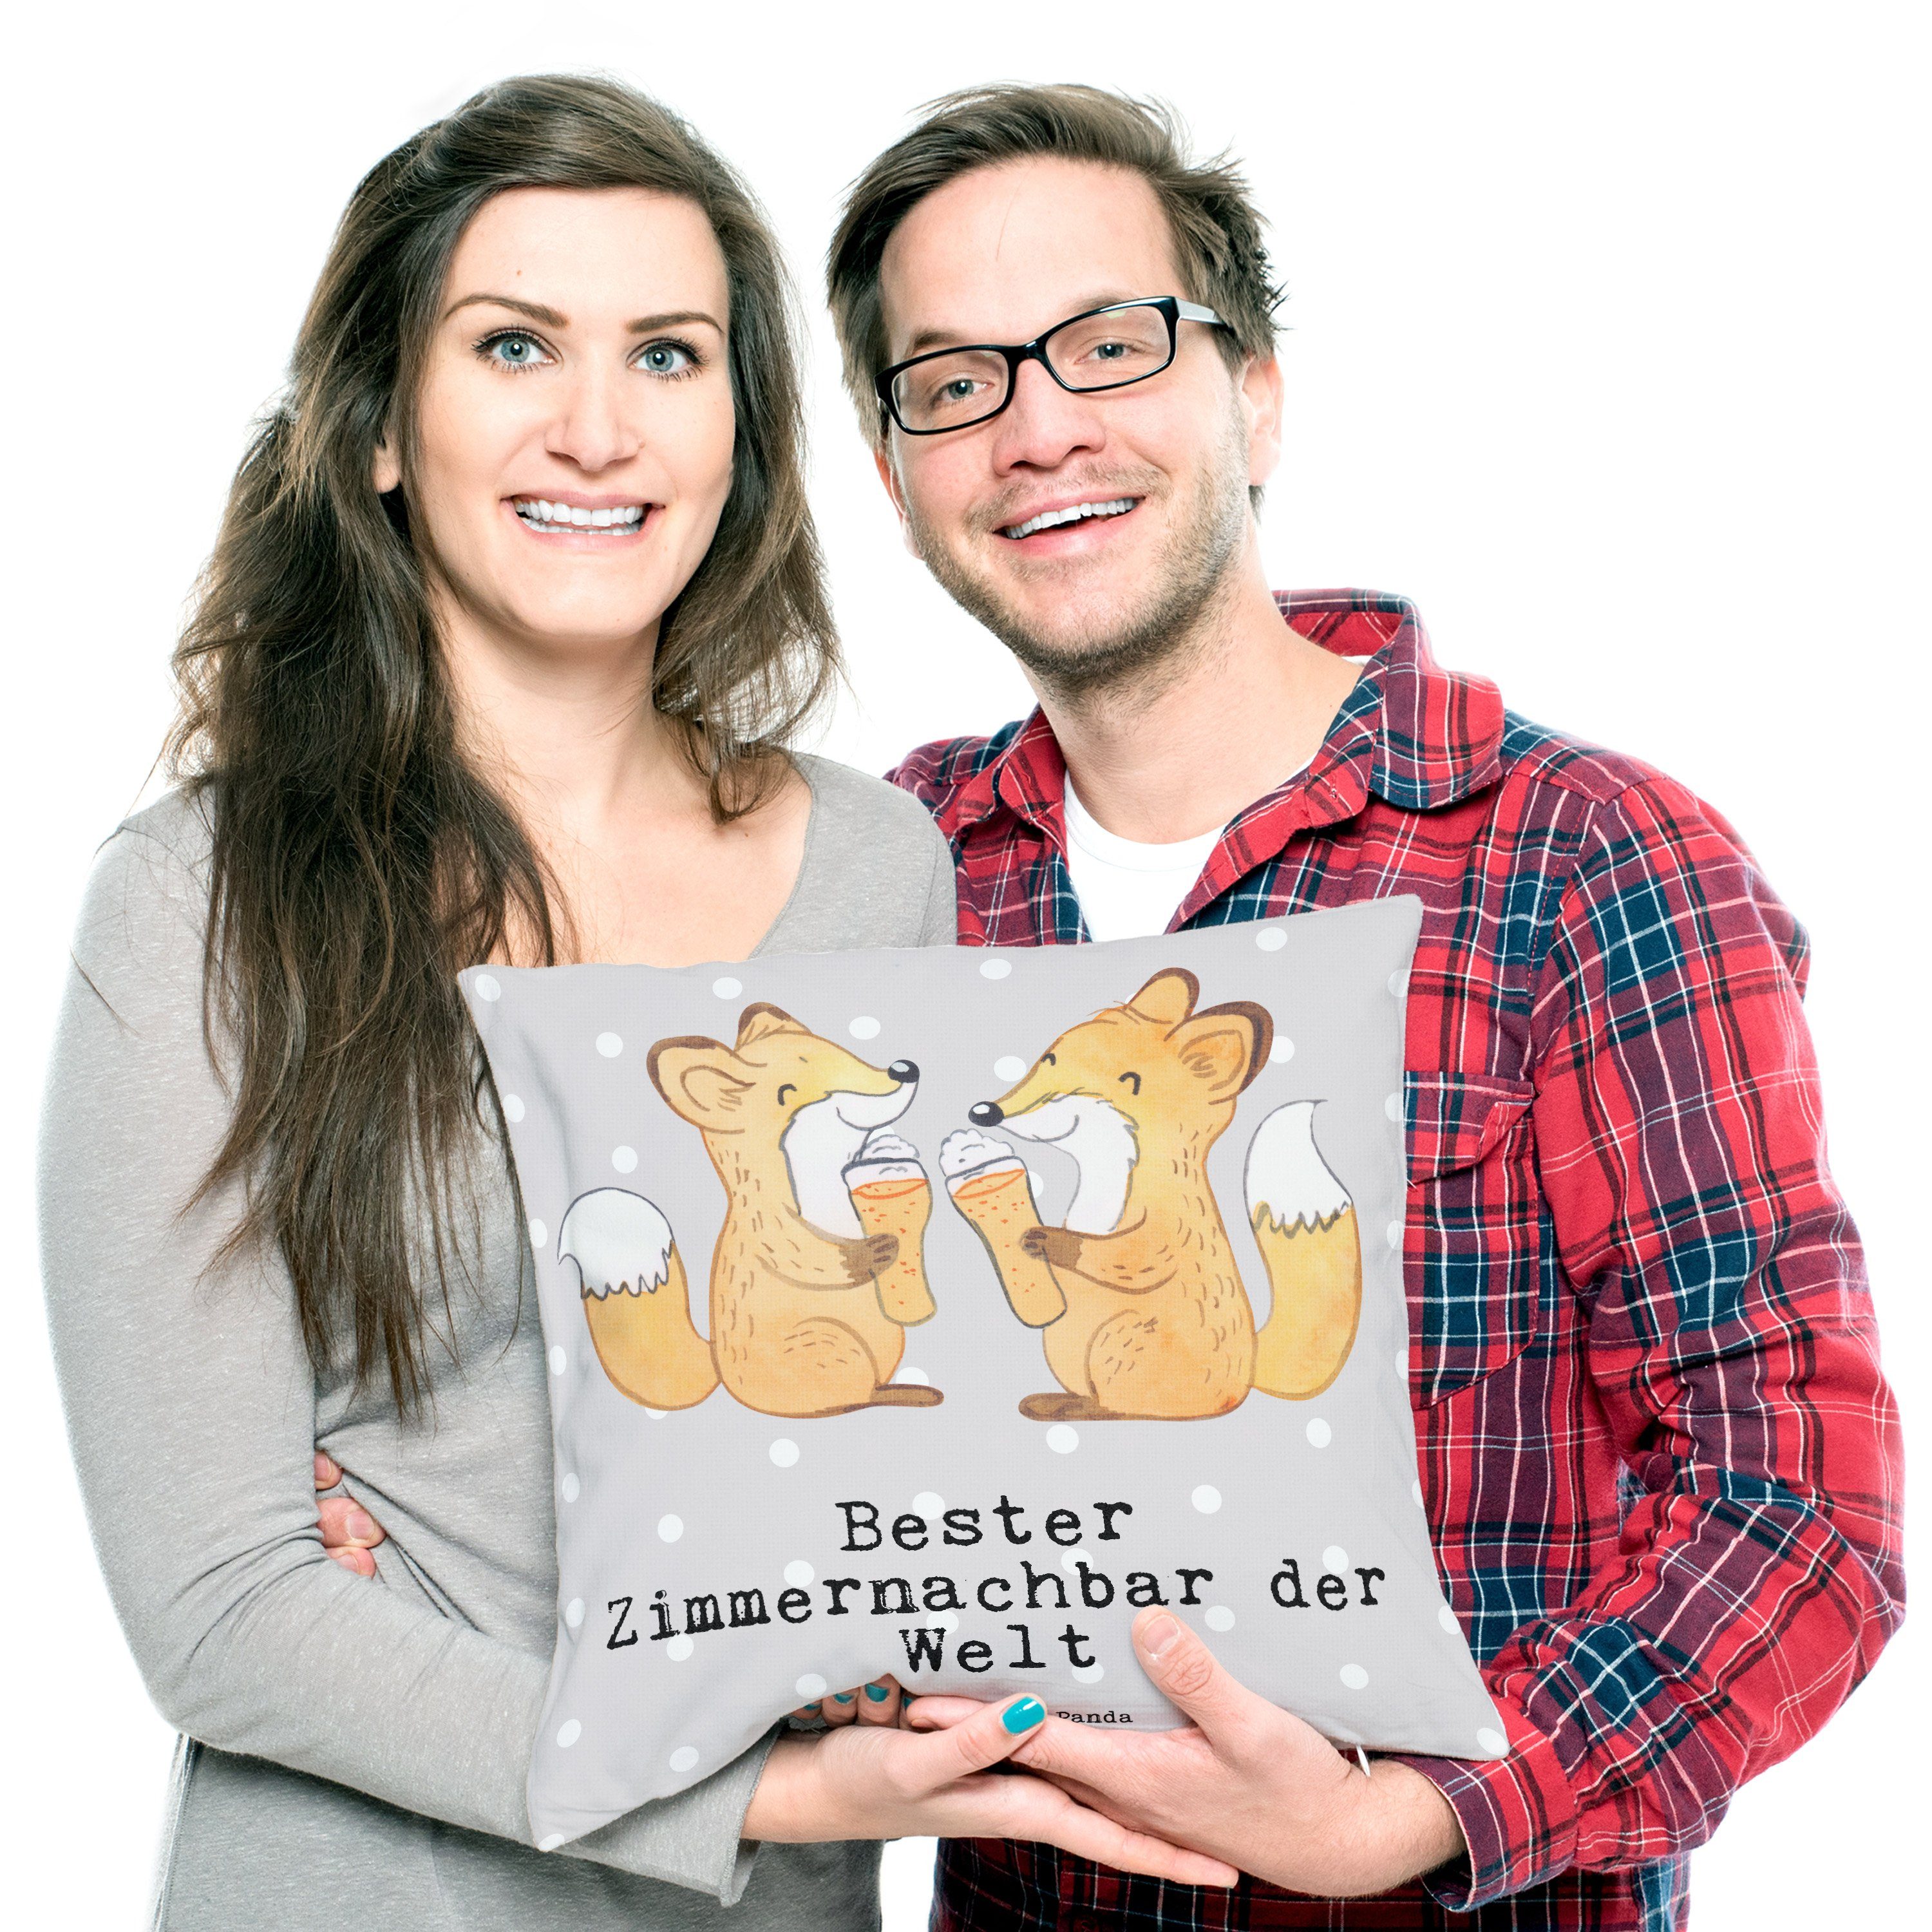 Mr. & Mrs. Bester Grau Wohnhe Zimmernachbar Welt Panda Geschenk, der Pastell - - Fuchs Dekokissen